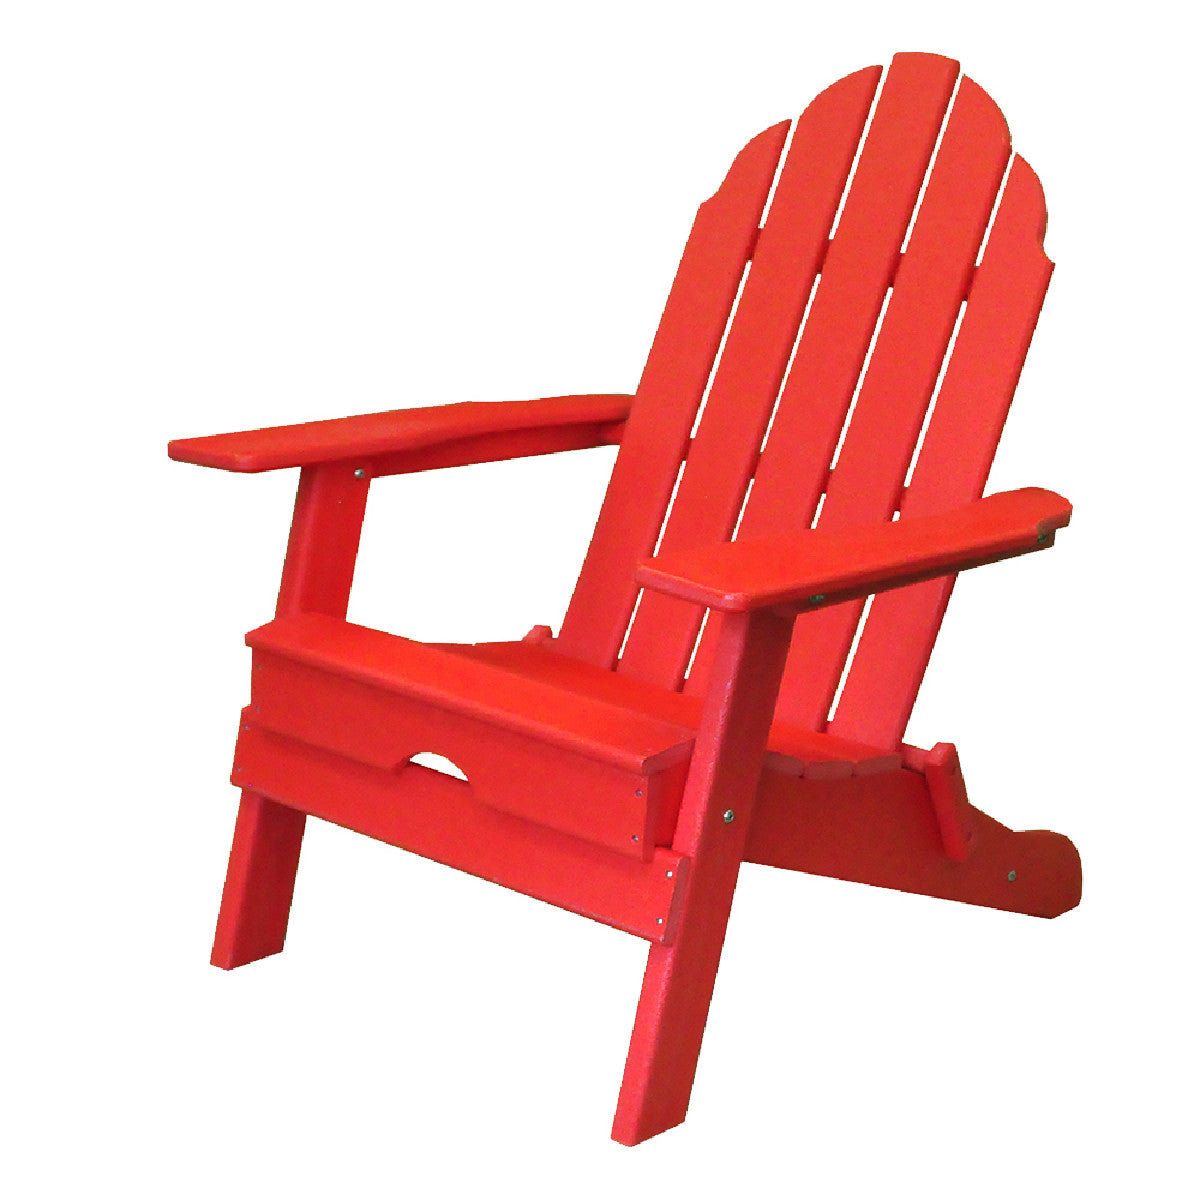 30" Red Heavy Duty Plastic Indoor Outdoor Adirondack Chair